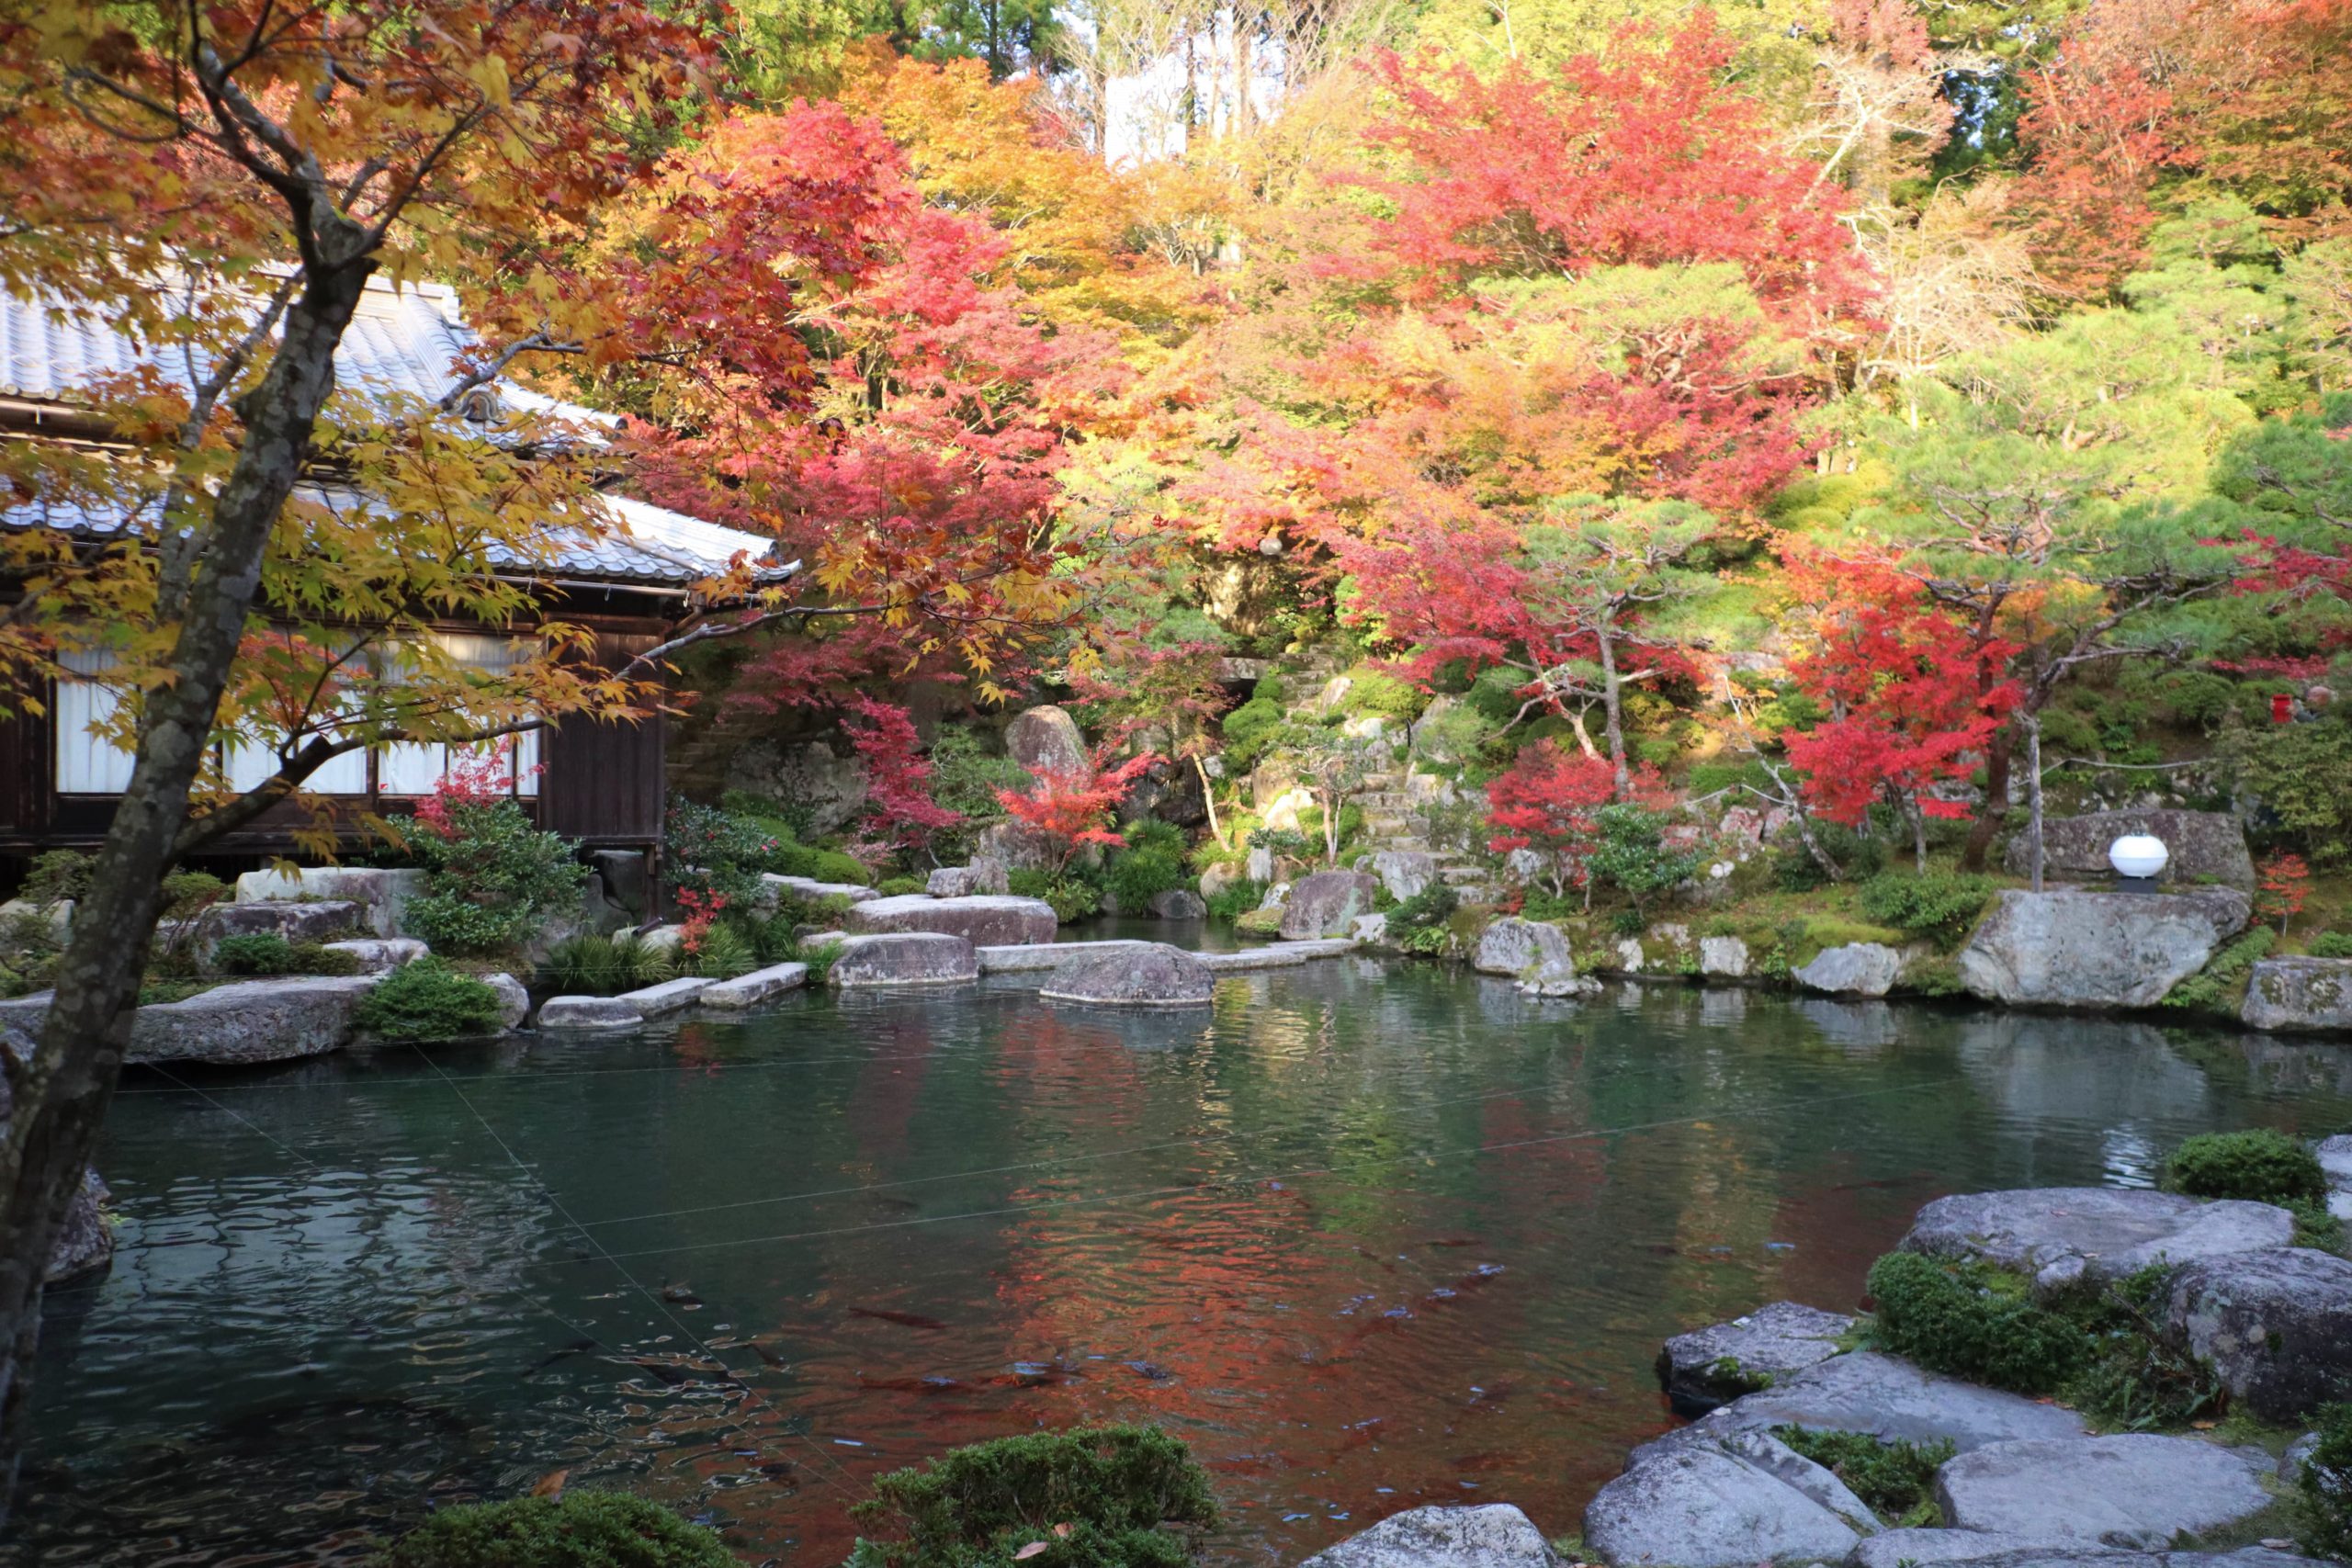 地上の楽園 と称された 湖東三山の一つ 百済寺 で紅葉狩り